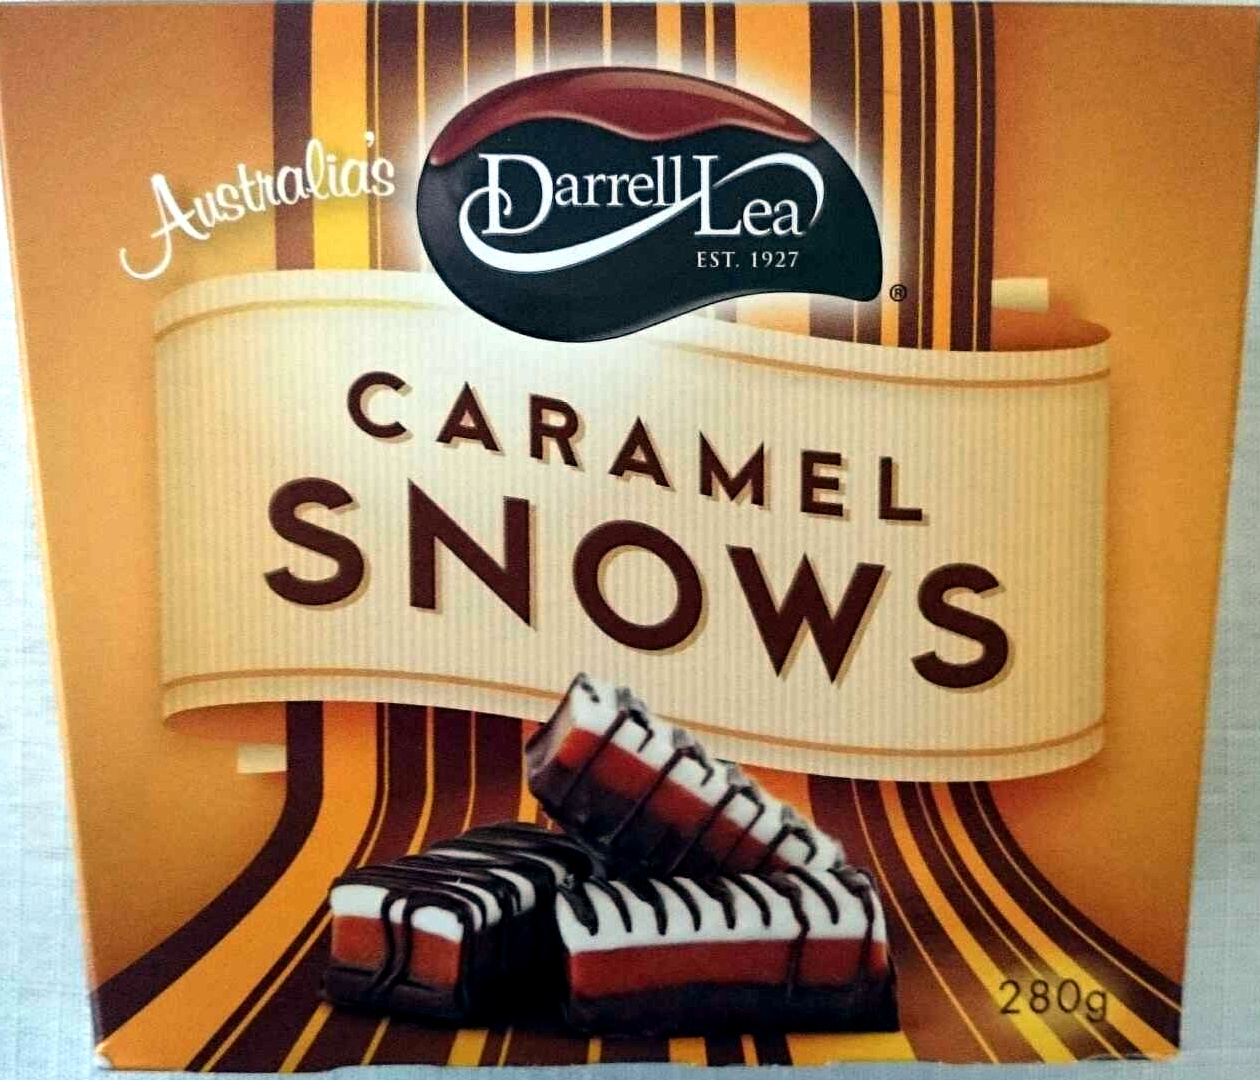 Caramel Snows - Product